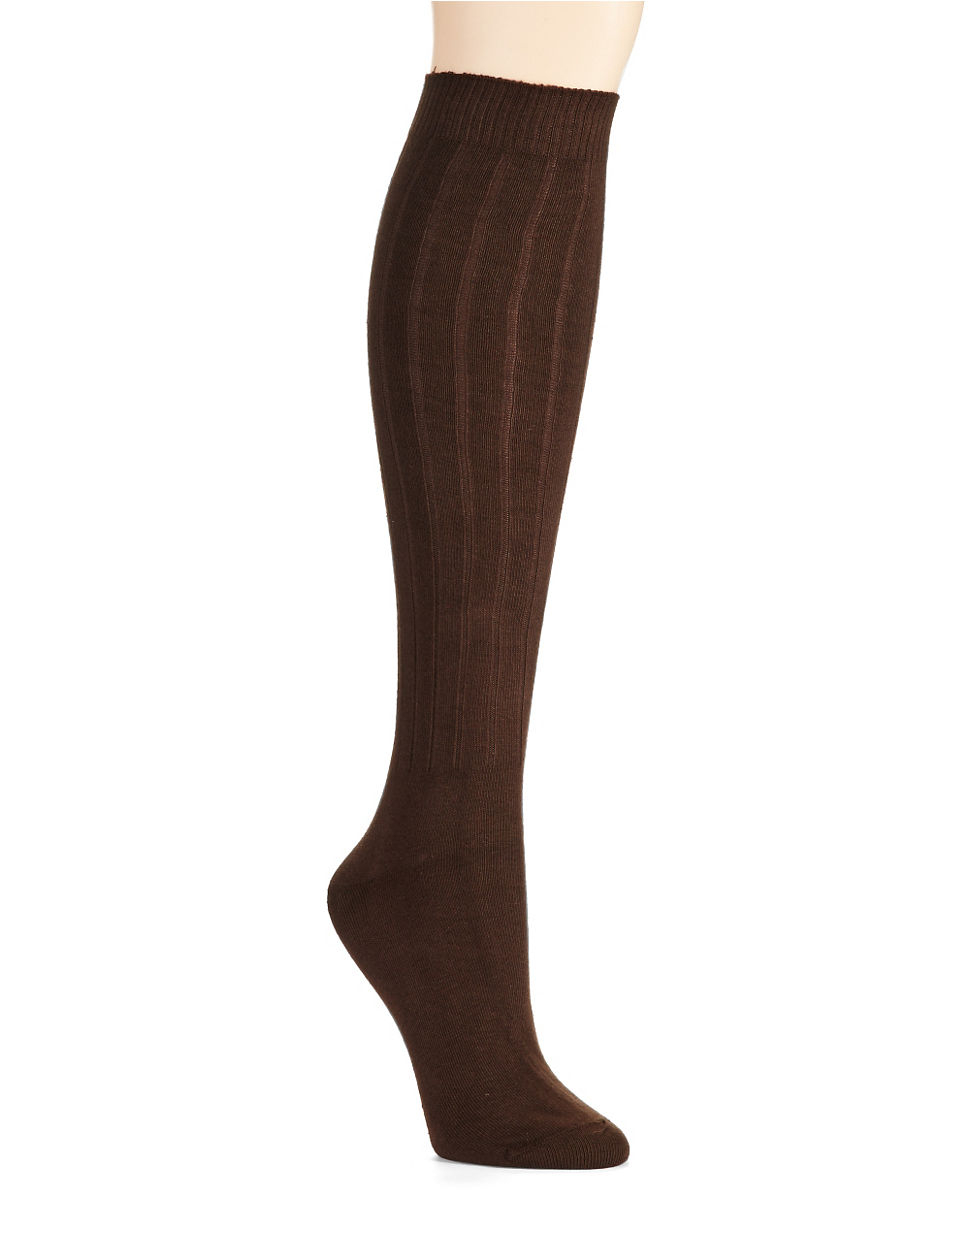 Lyst - Hue Soft Rib Knee Socks in Brown